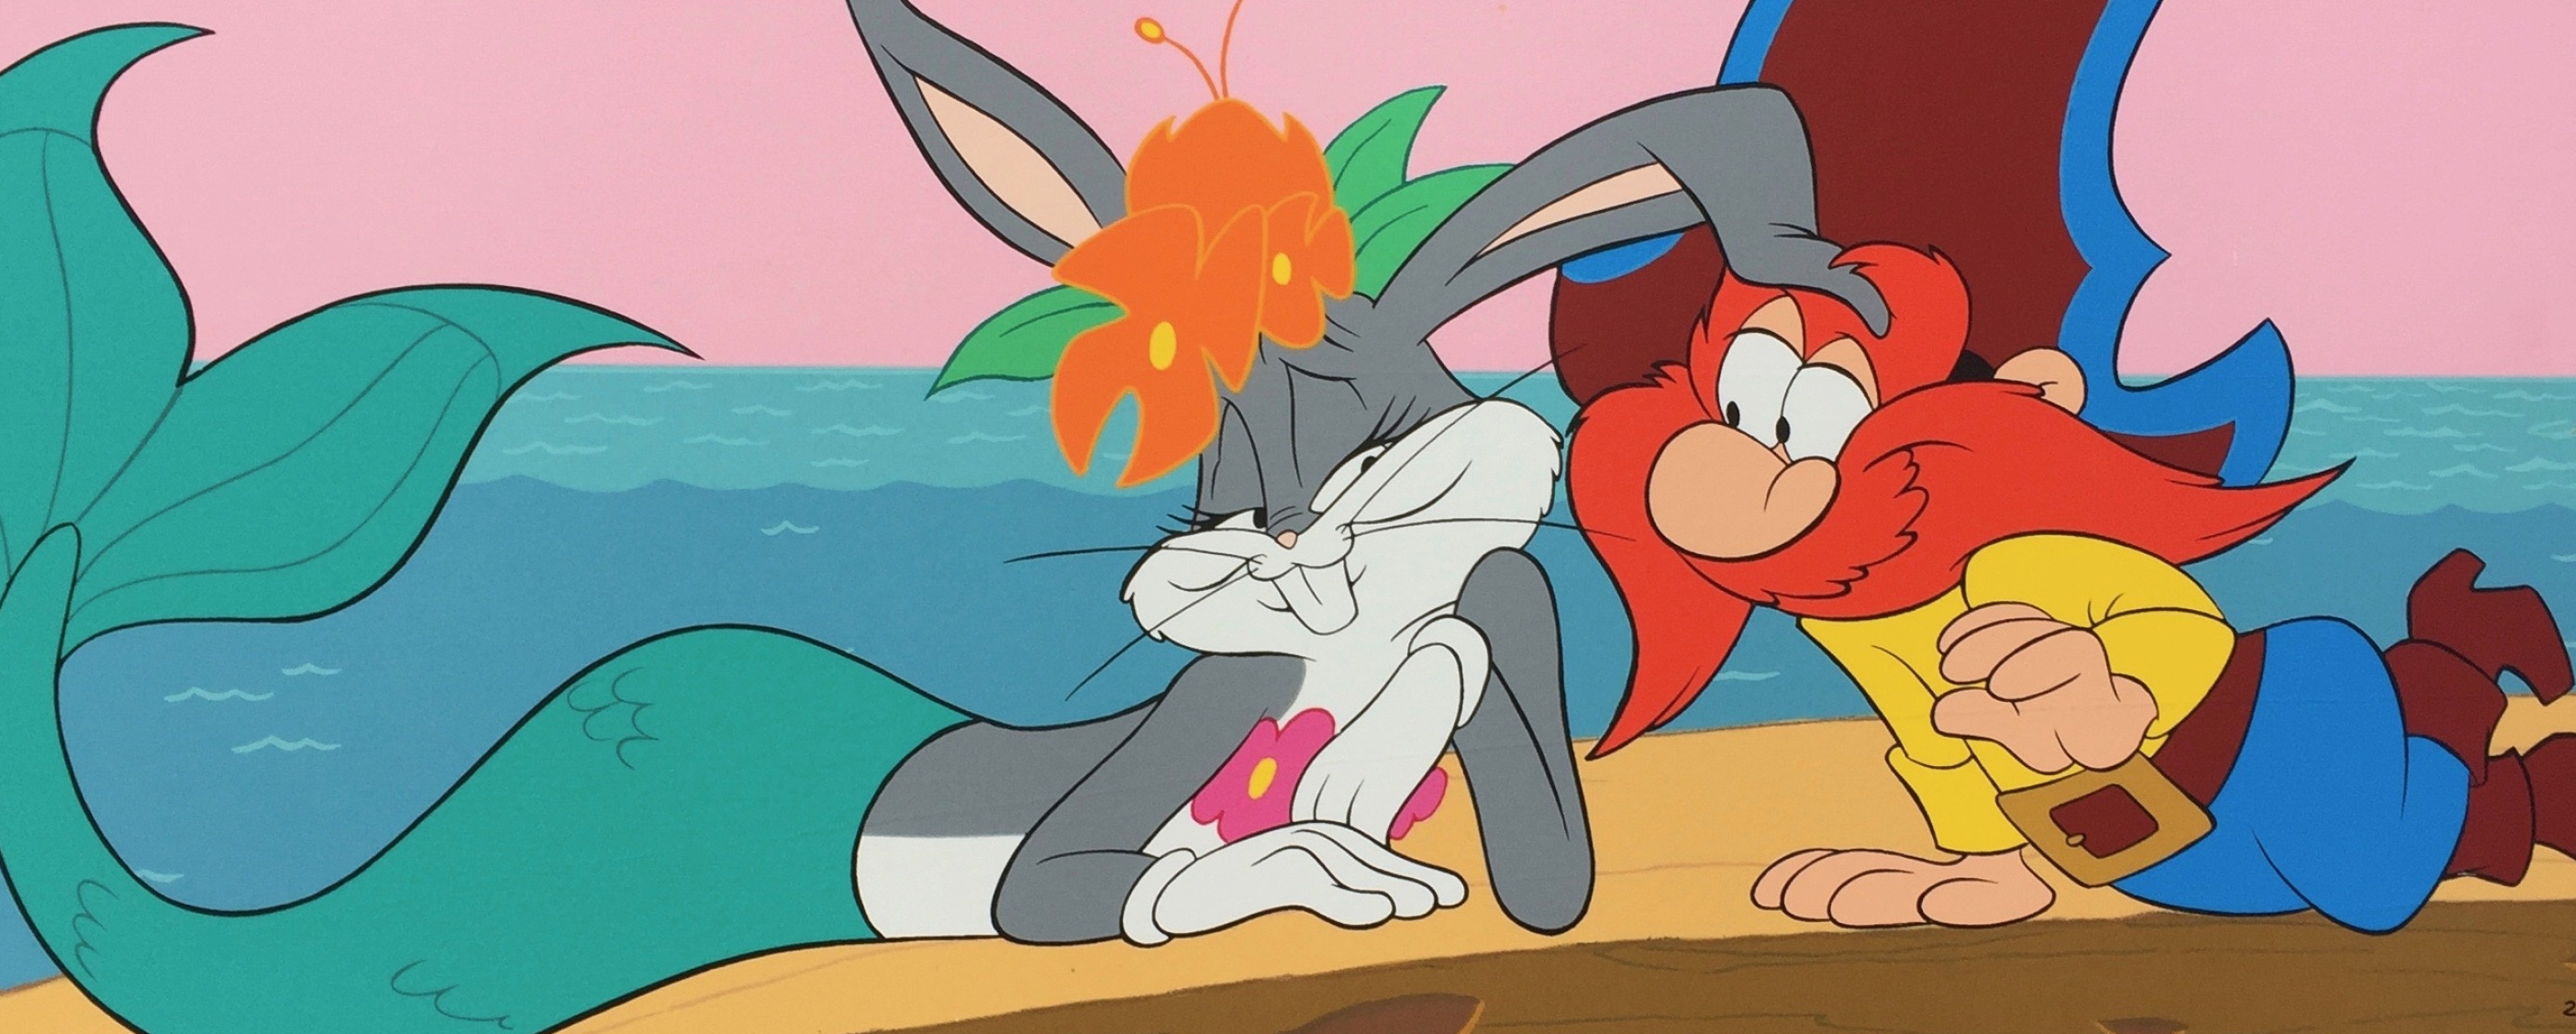 Bugs Bunny Mermaid, Yosemite Sam, Serigraph artwork, Warner Bros, 2810x1130 Dual Screen Desktop